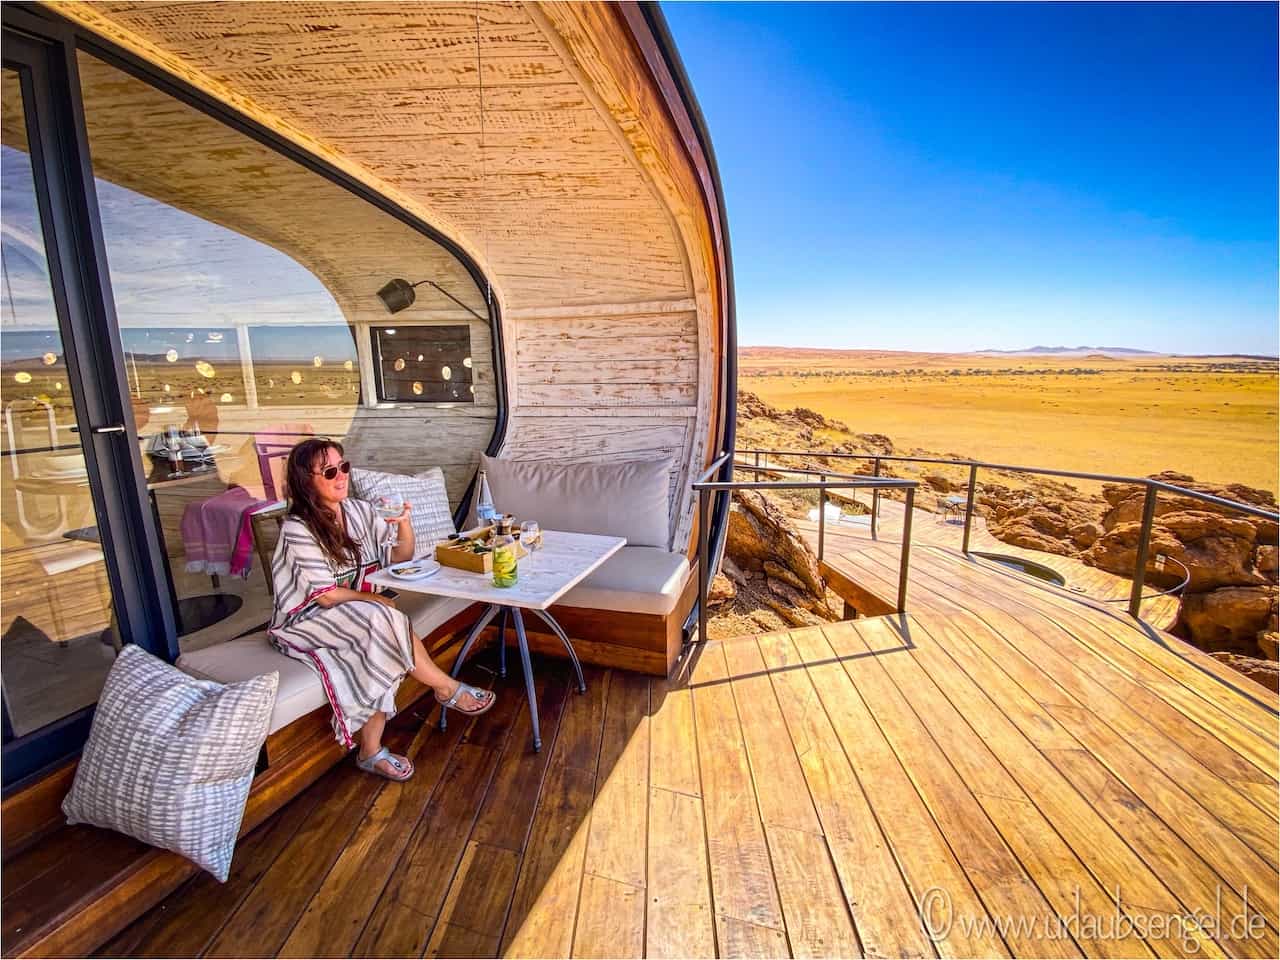 Terrasse vor dem Hotel in der Wüste Namibia in Namibia